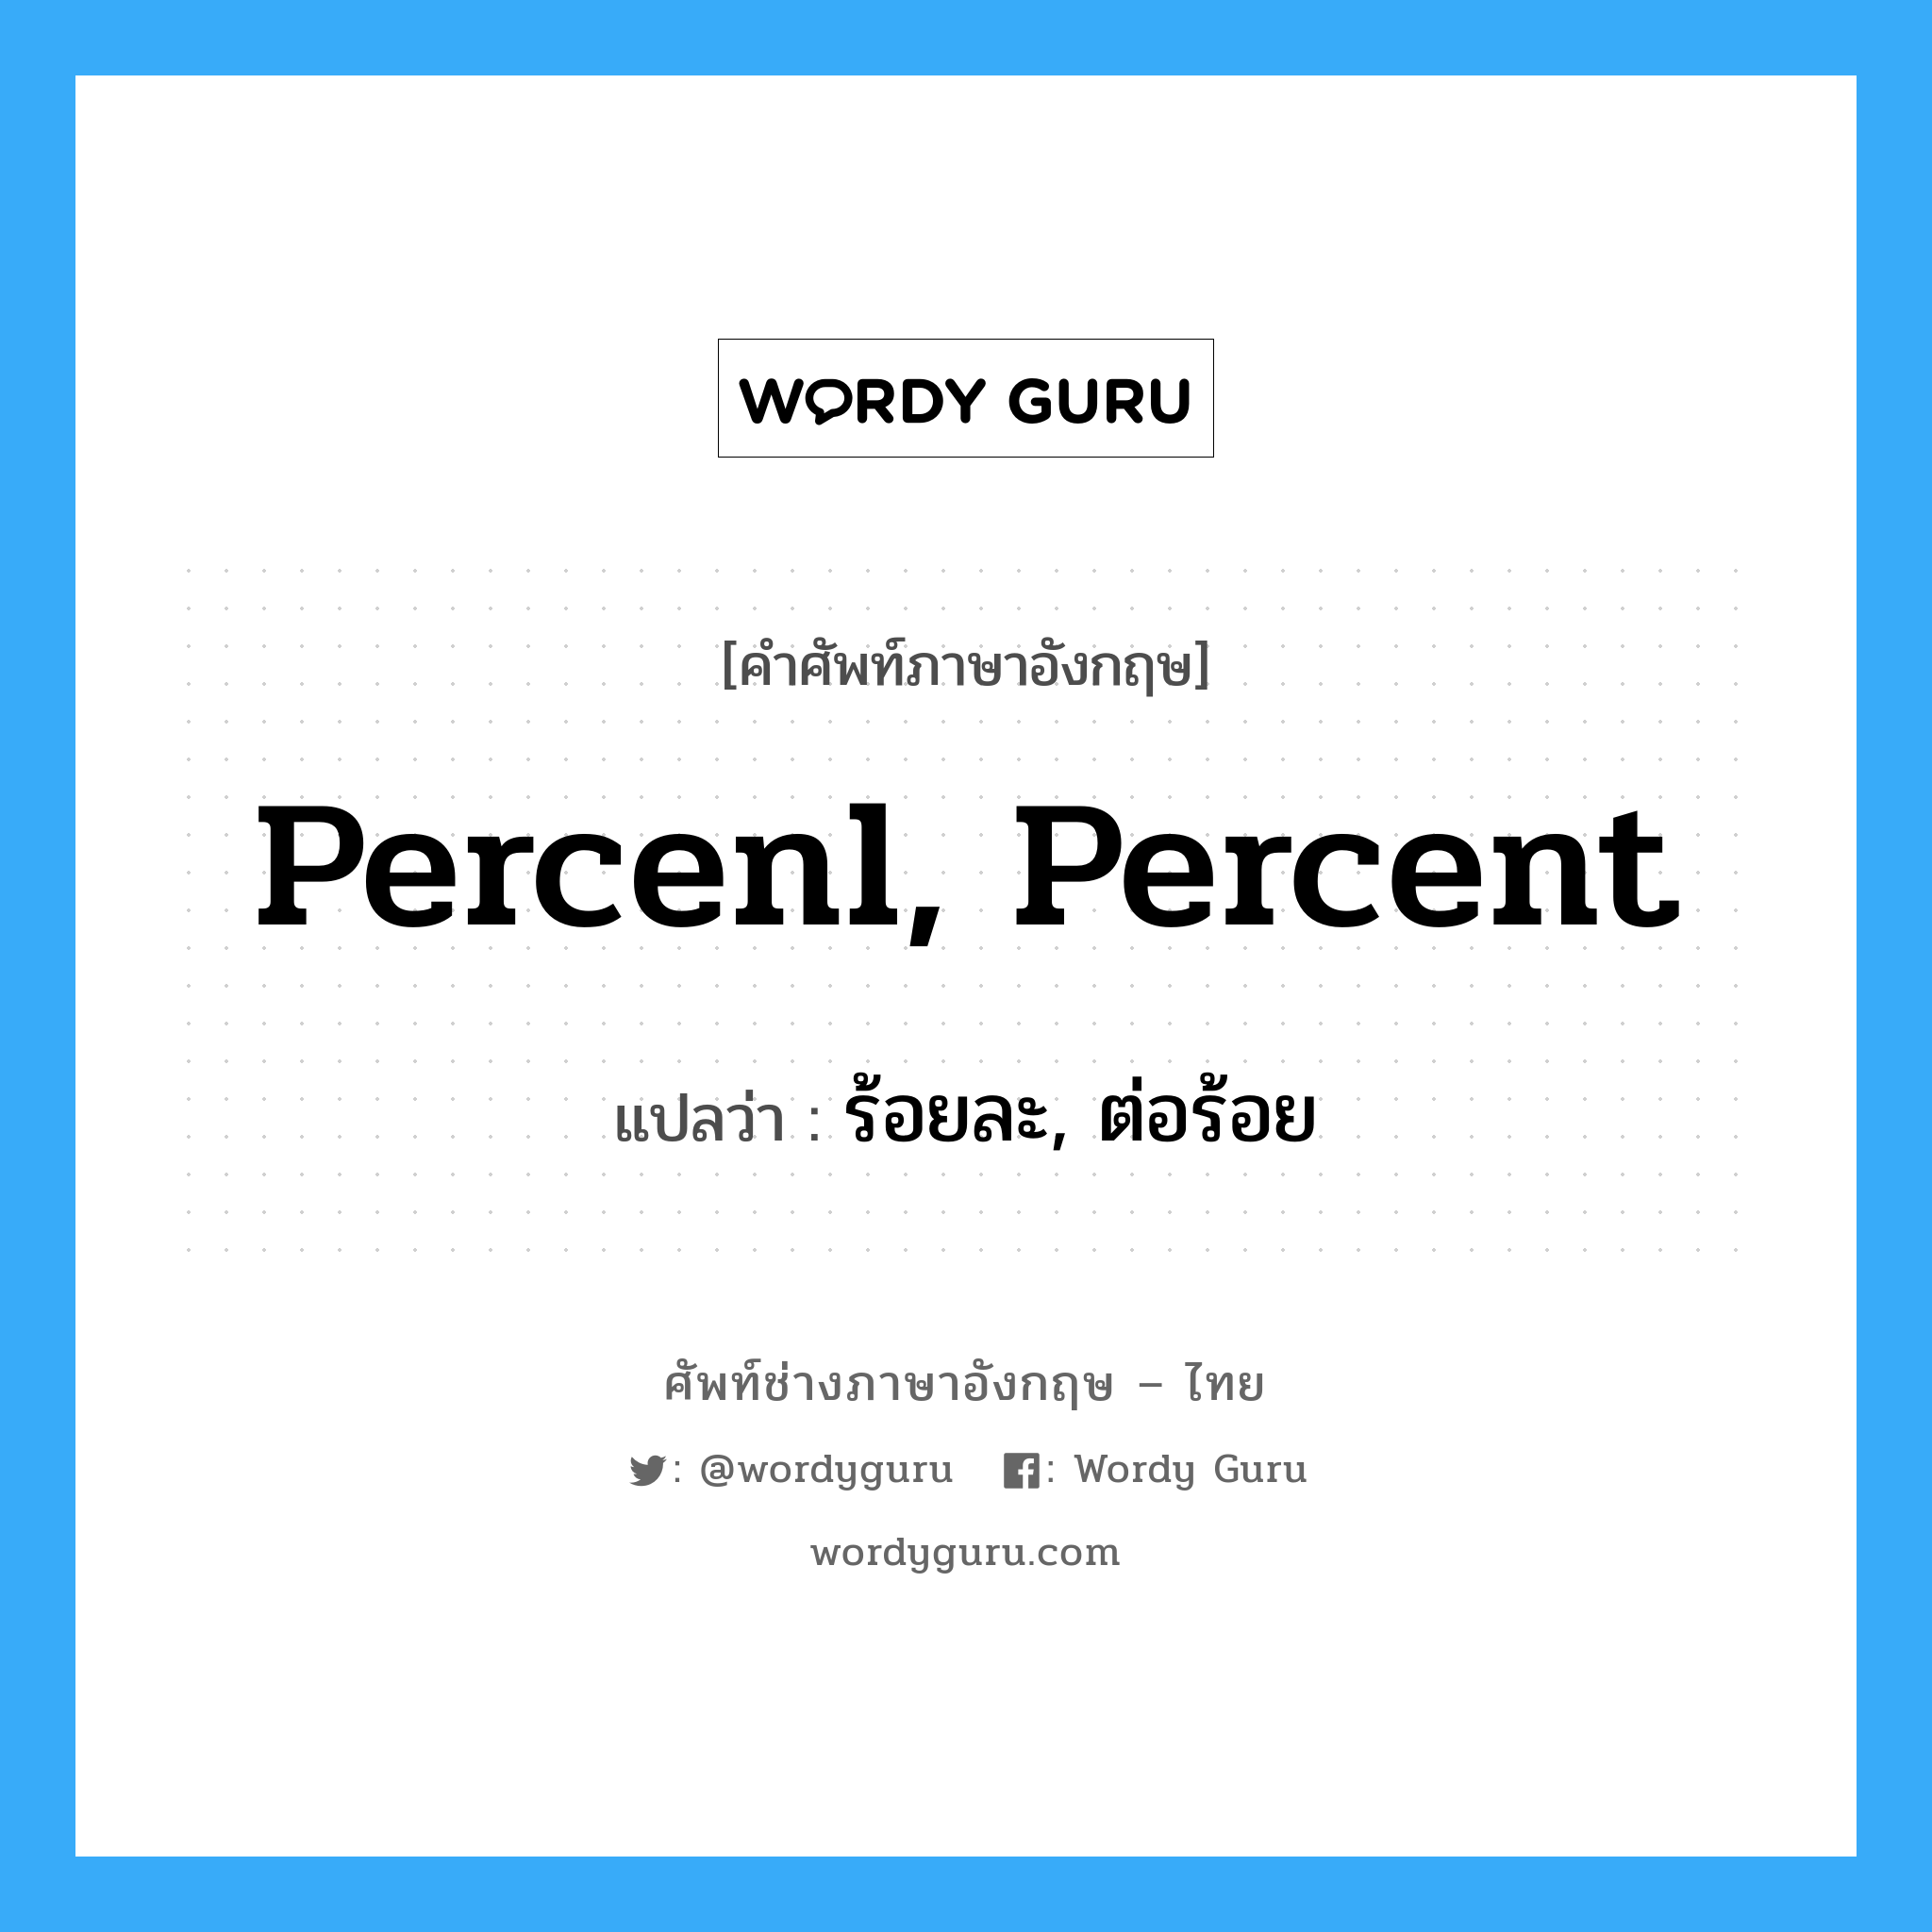 ร้อยละ, ต่อร้อย ภาษาอังกฤษ?, คำศัพท์ช่างภาษาอังกฤษ - ไทย ร้อยละ, ต่อร้อย คำศัพท์ภาษาอังกฤษ ร้อยละ, ต่อร้อย แปลว่า percenl, percent